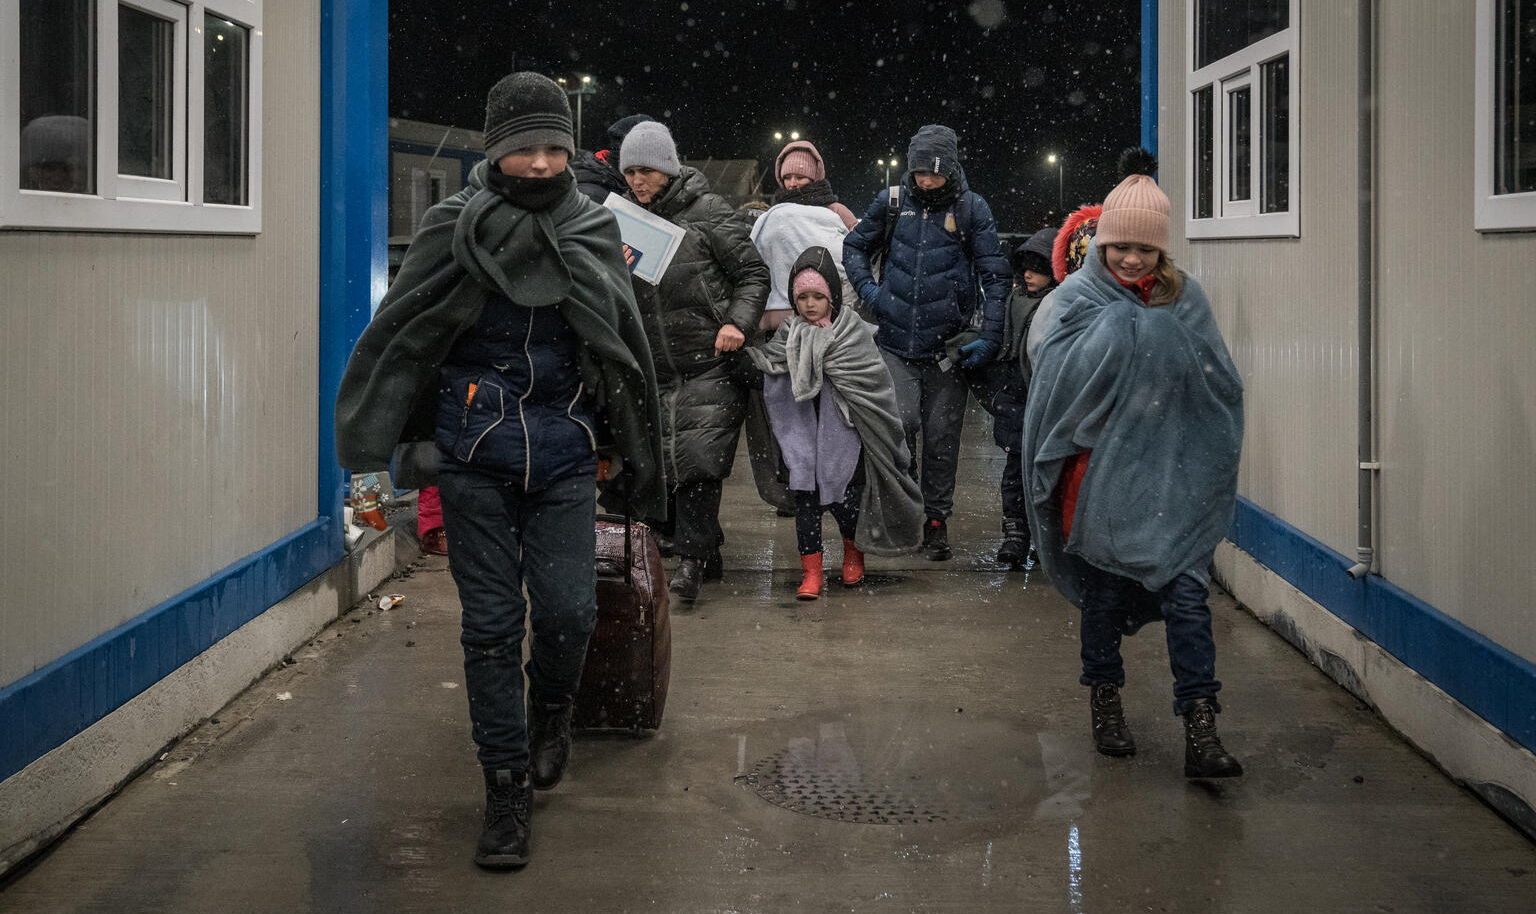 Principal destino dos deslocados ucranianos é a Polônia, que já recebeu cerca de 600 mil pessoas, cifra que cresce rapidamente